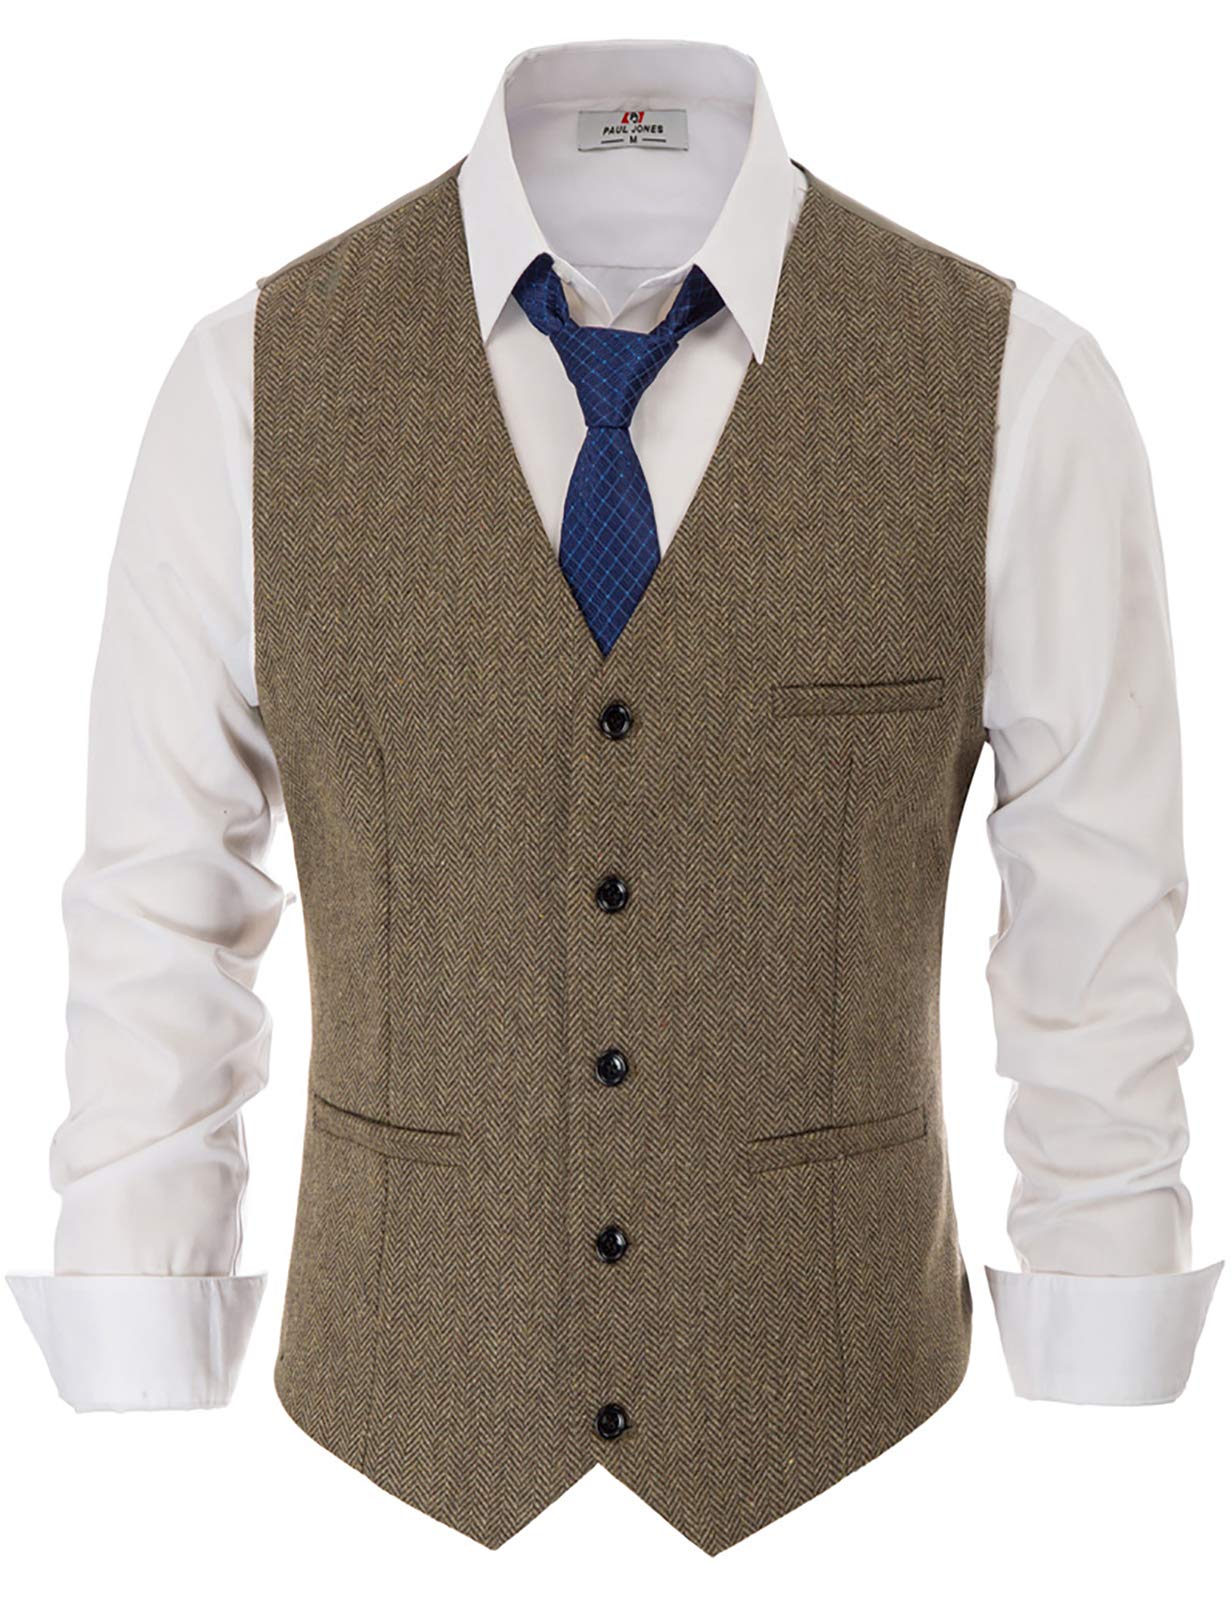 PJ PAUL JONES Men's Western Herringbone Tweed Suit Vest Wool Blend V Neck Slim Fit Waistcoat